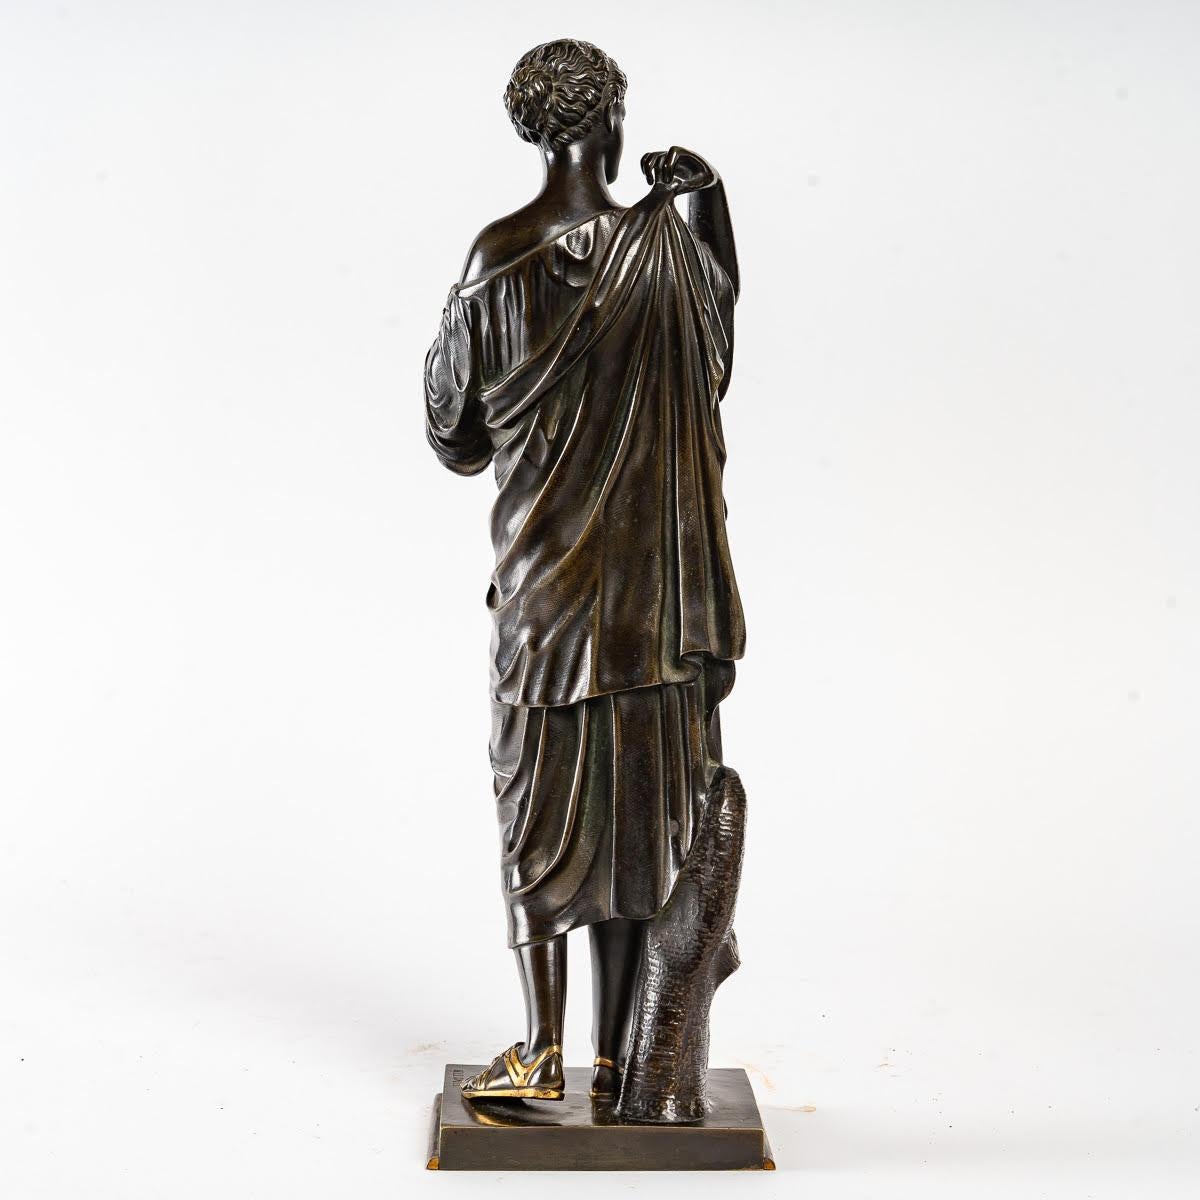 Bronze sculpture of Artemis by Edouard Henri De Le Salle

Bronze sculpture of Artemis by Edouard Henri De Le Salle from the end of the 19th century

Dimensions: H: 41cm, W: 13cm, D: 10cm.